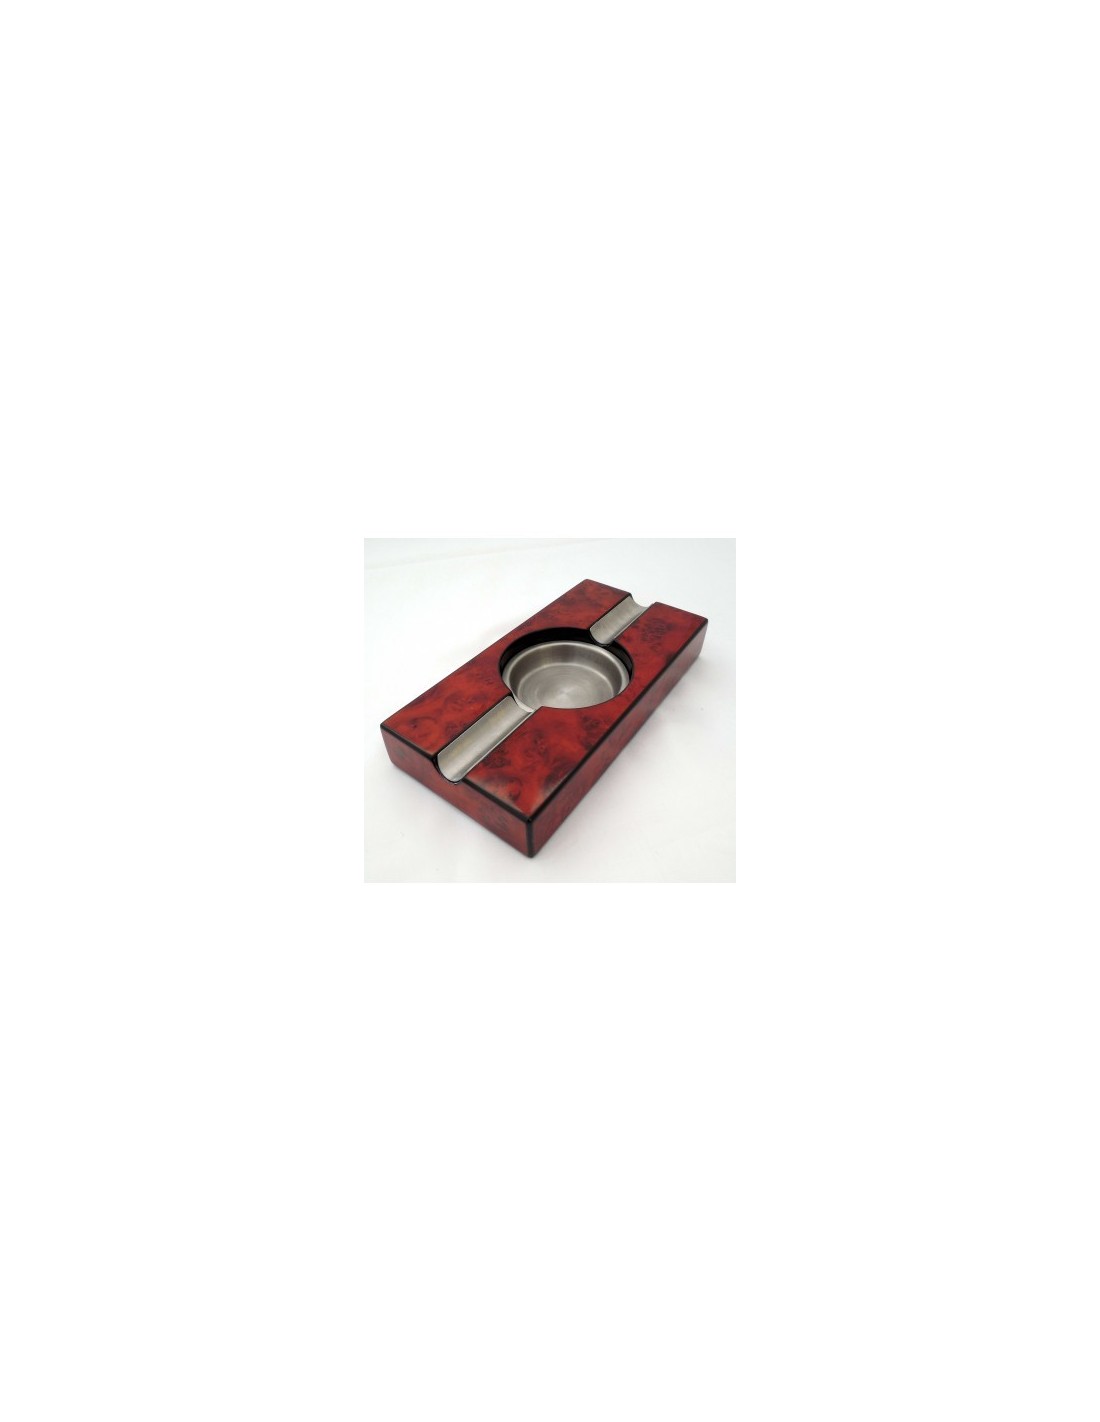 Cendrier cigare métal et bois rouge 2 fumeurs - Le Comptoir des Aficionados